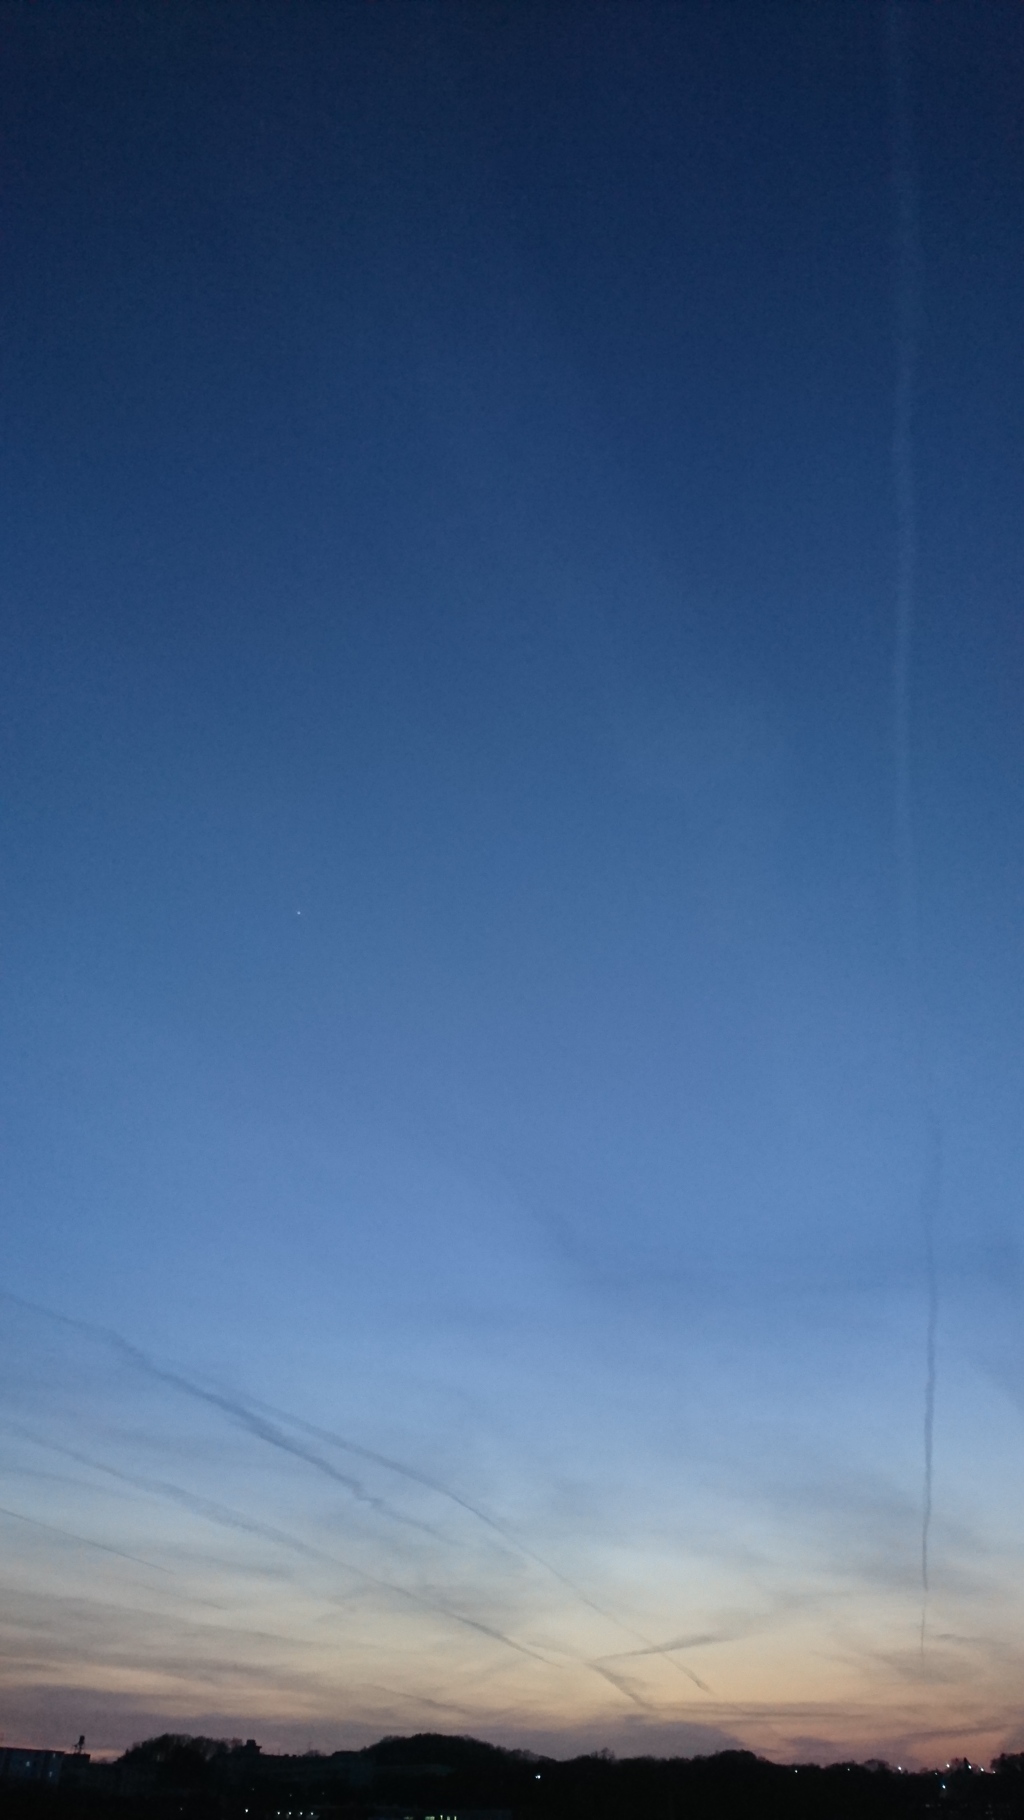 飛行機雲と金星と夕焼けと